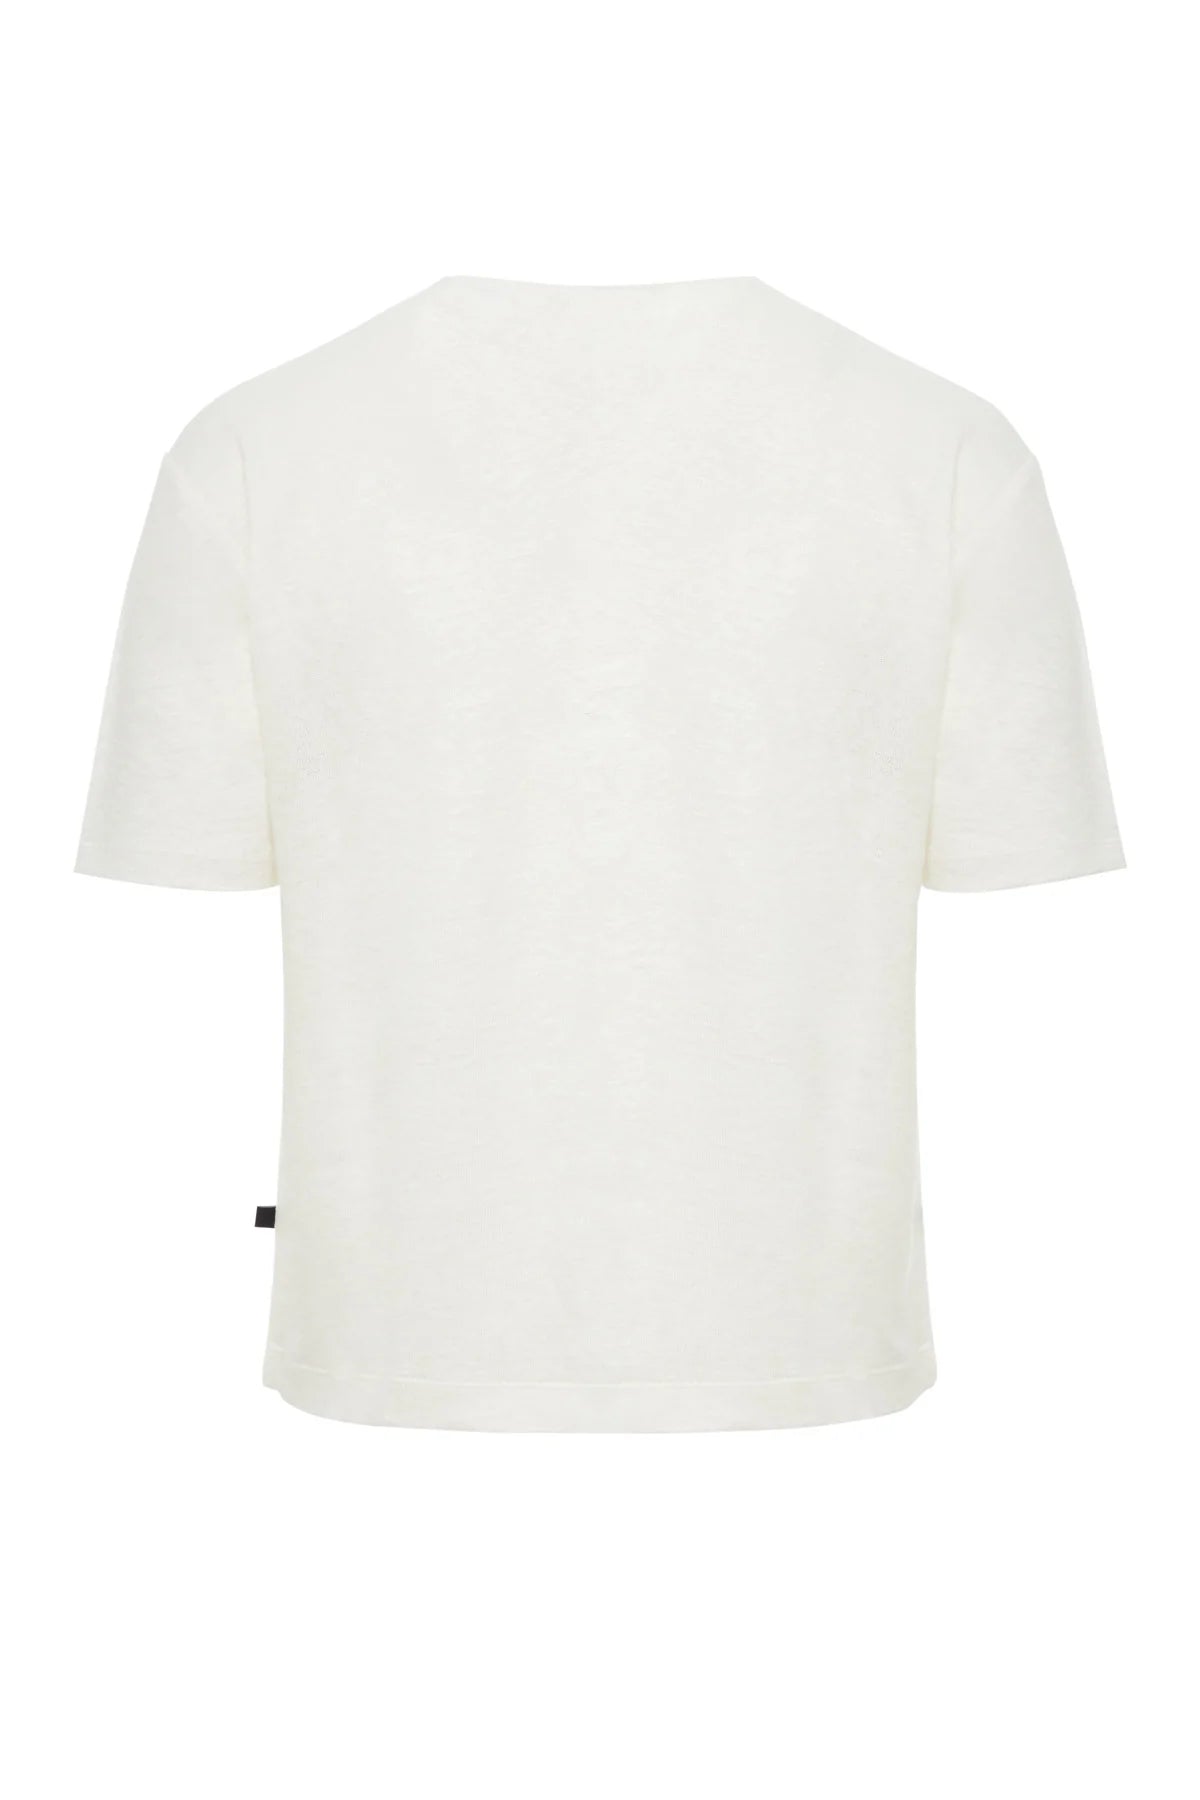 Ibiza - White Linen T-Shirt